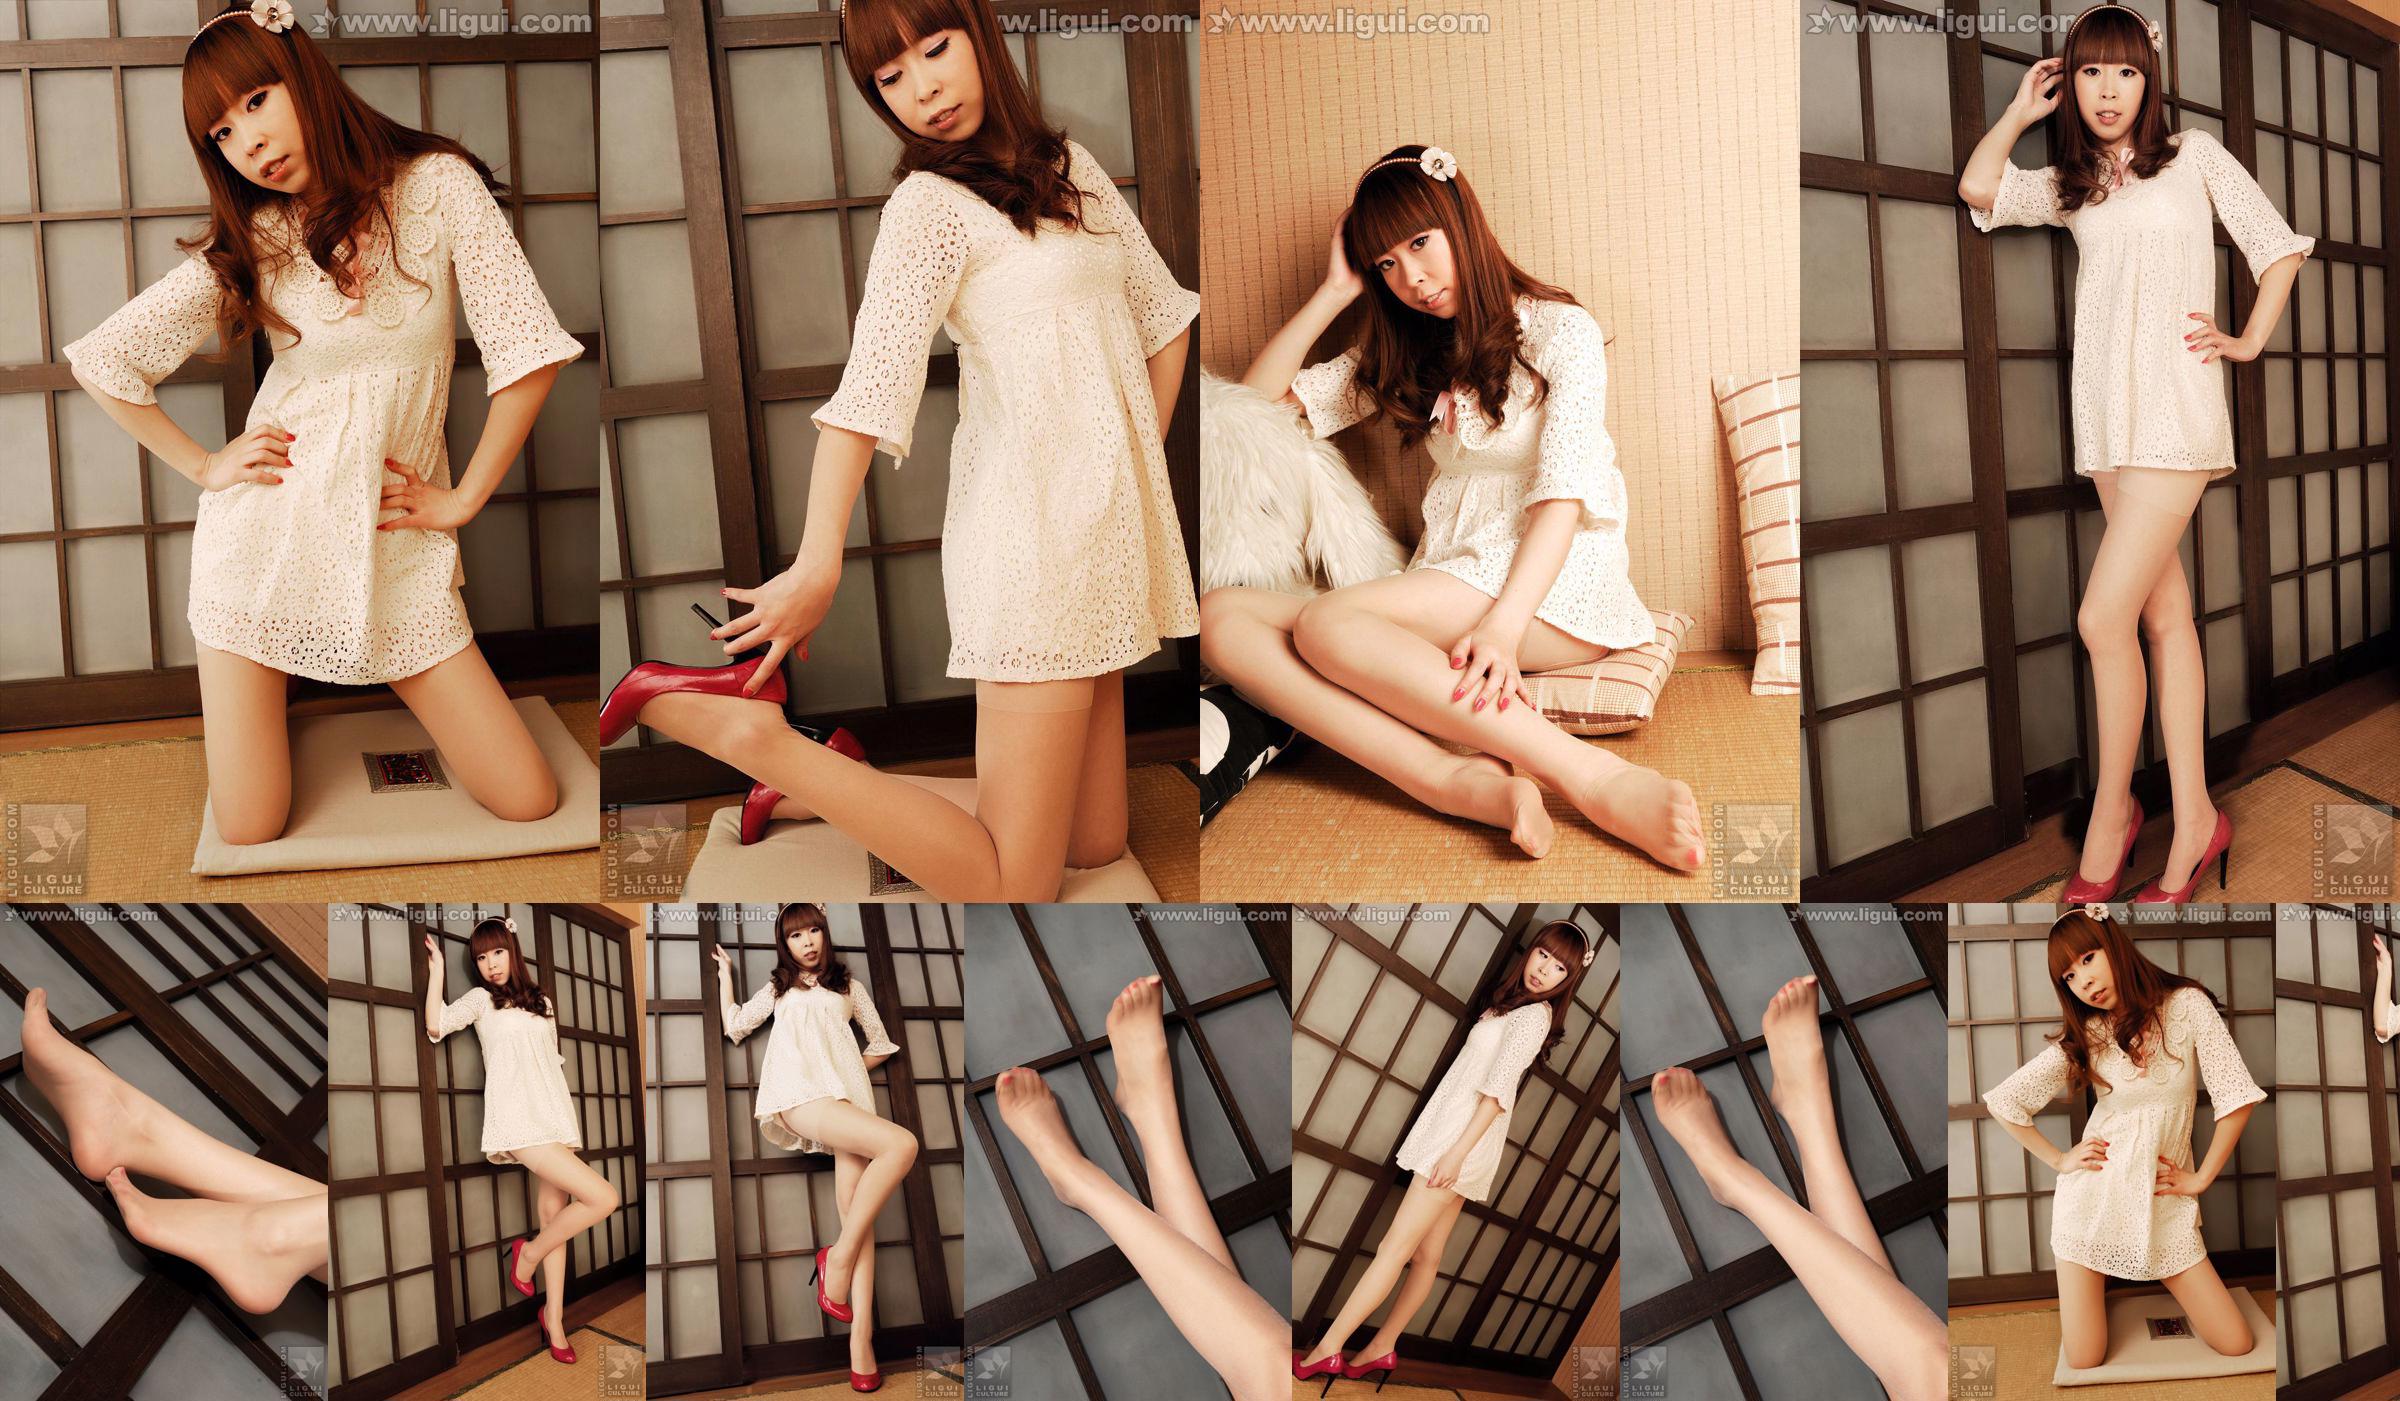 Modell Vikcy "Die Versuchung des japanischen Stils" [丽 柜 LiGui] Schöne Beine und Jadefuß Foto Bild No.1ecd93 Seite 1